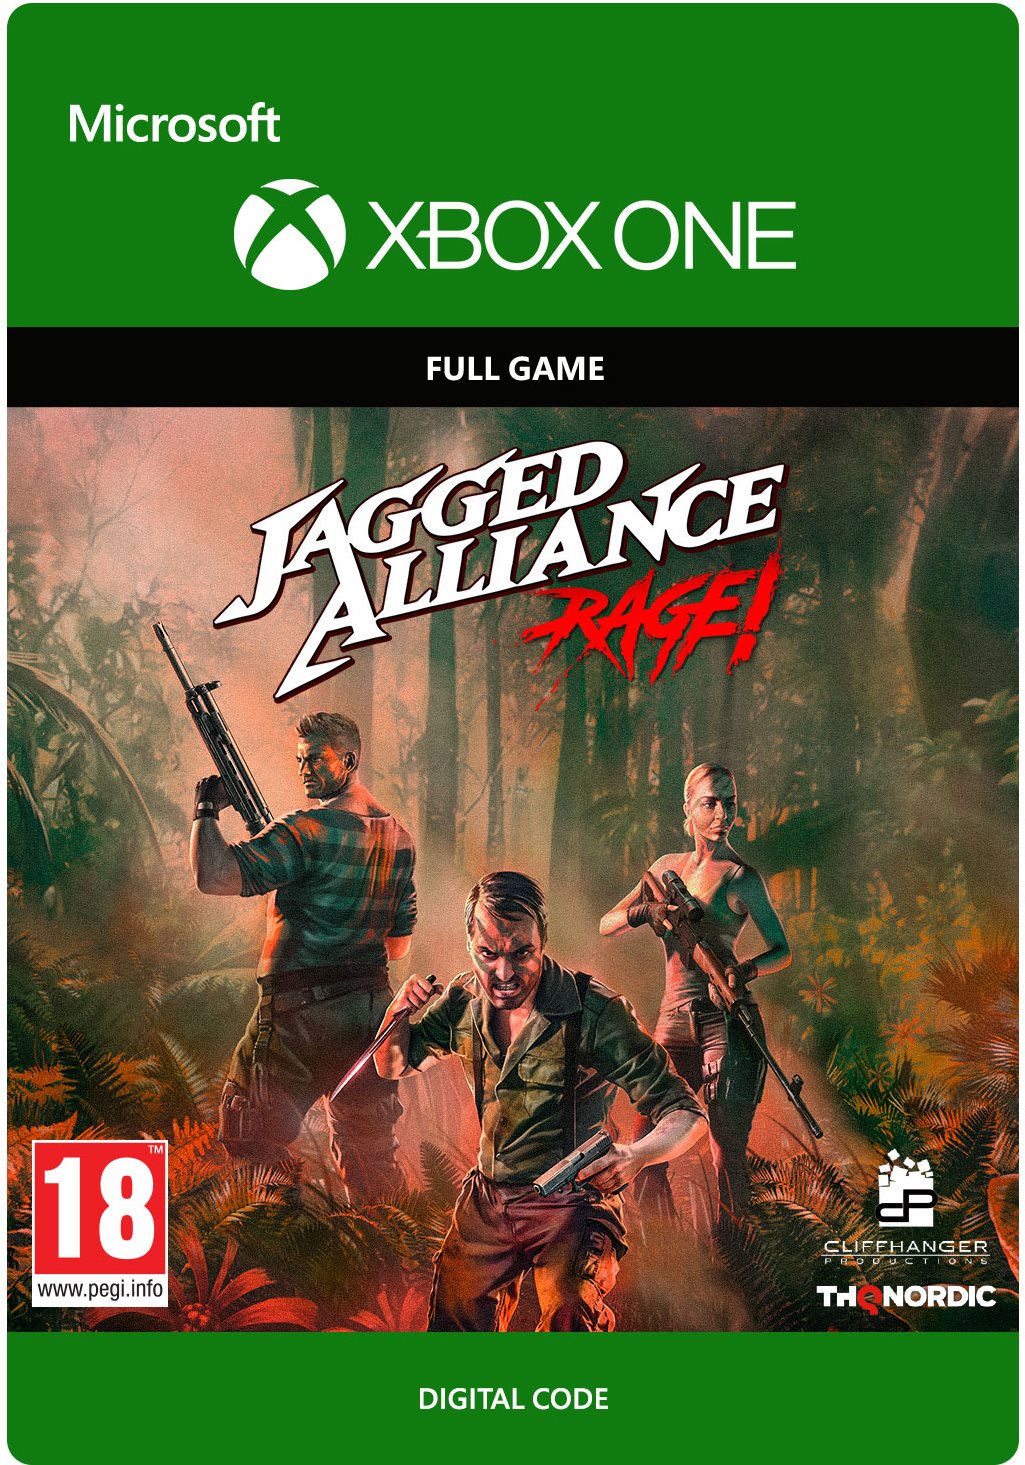 Jagged Alliance: Rage! - Xbox DIGITAL